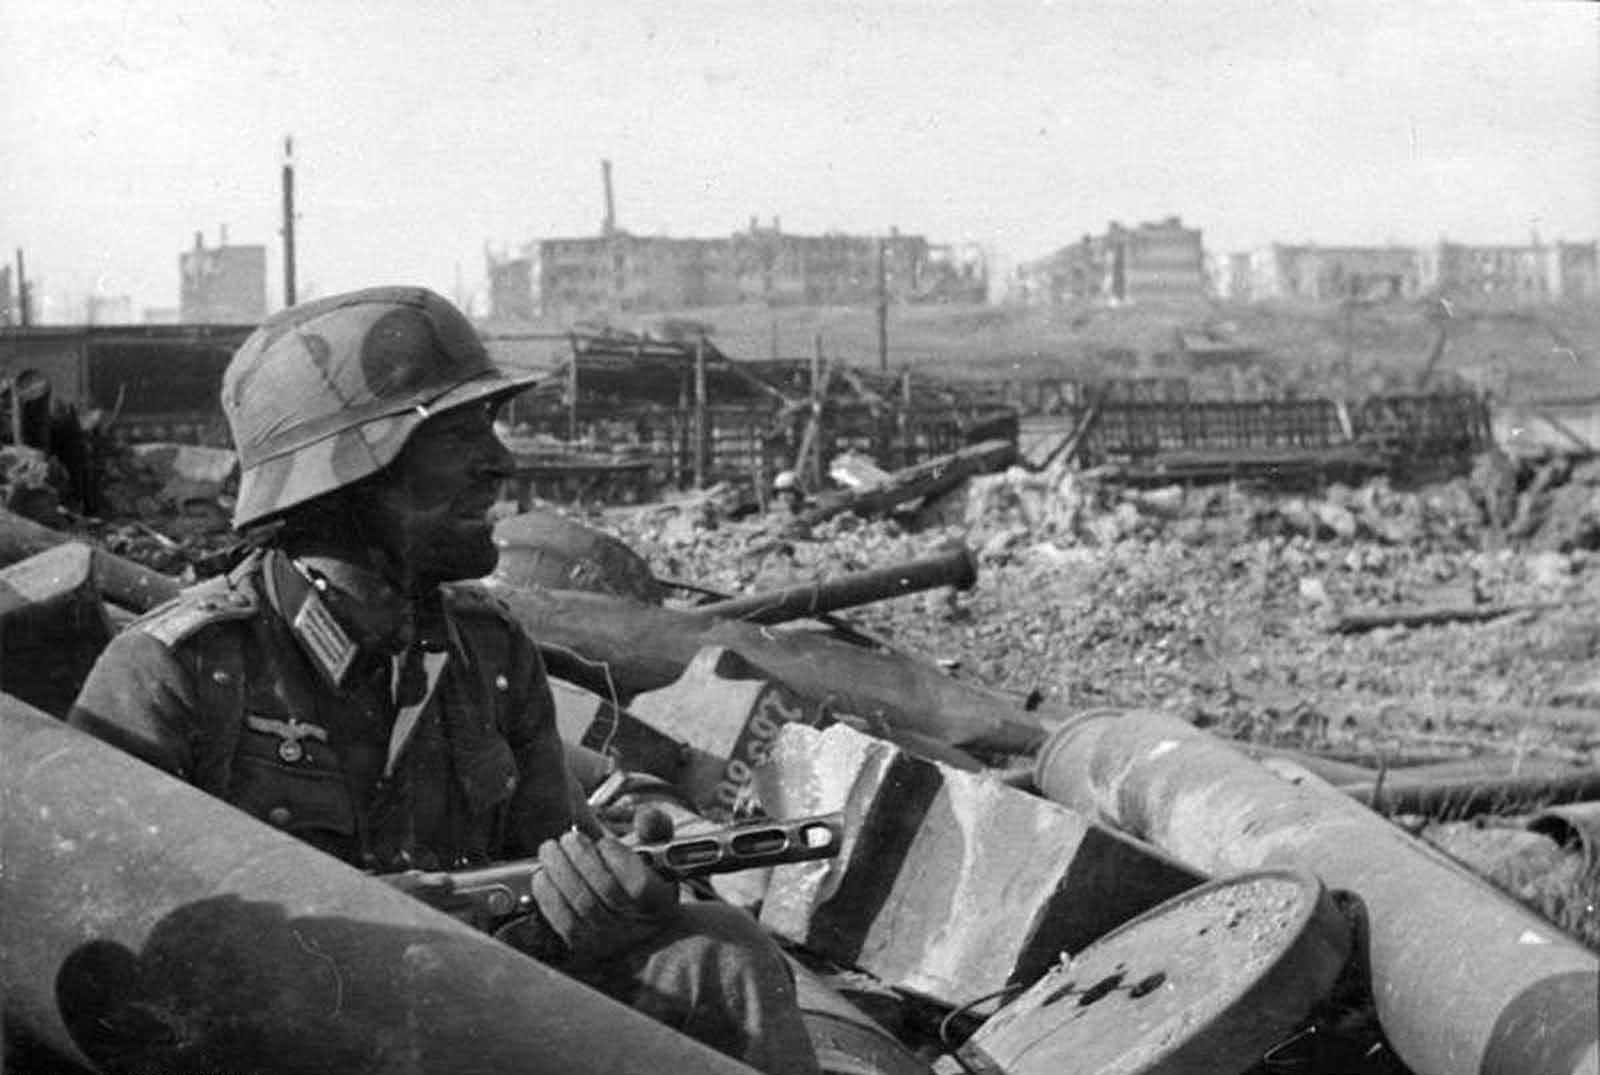 残酷的二战战争画面摄影与效果合成 [22P] - 16图库素材网